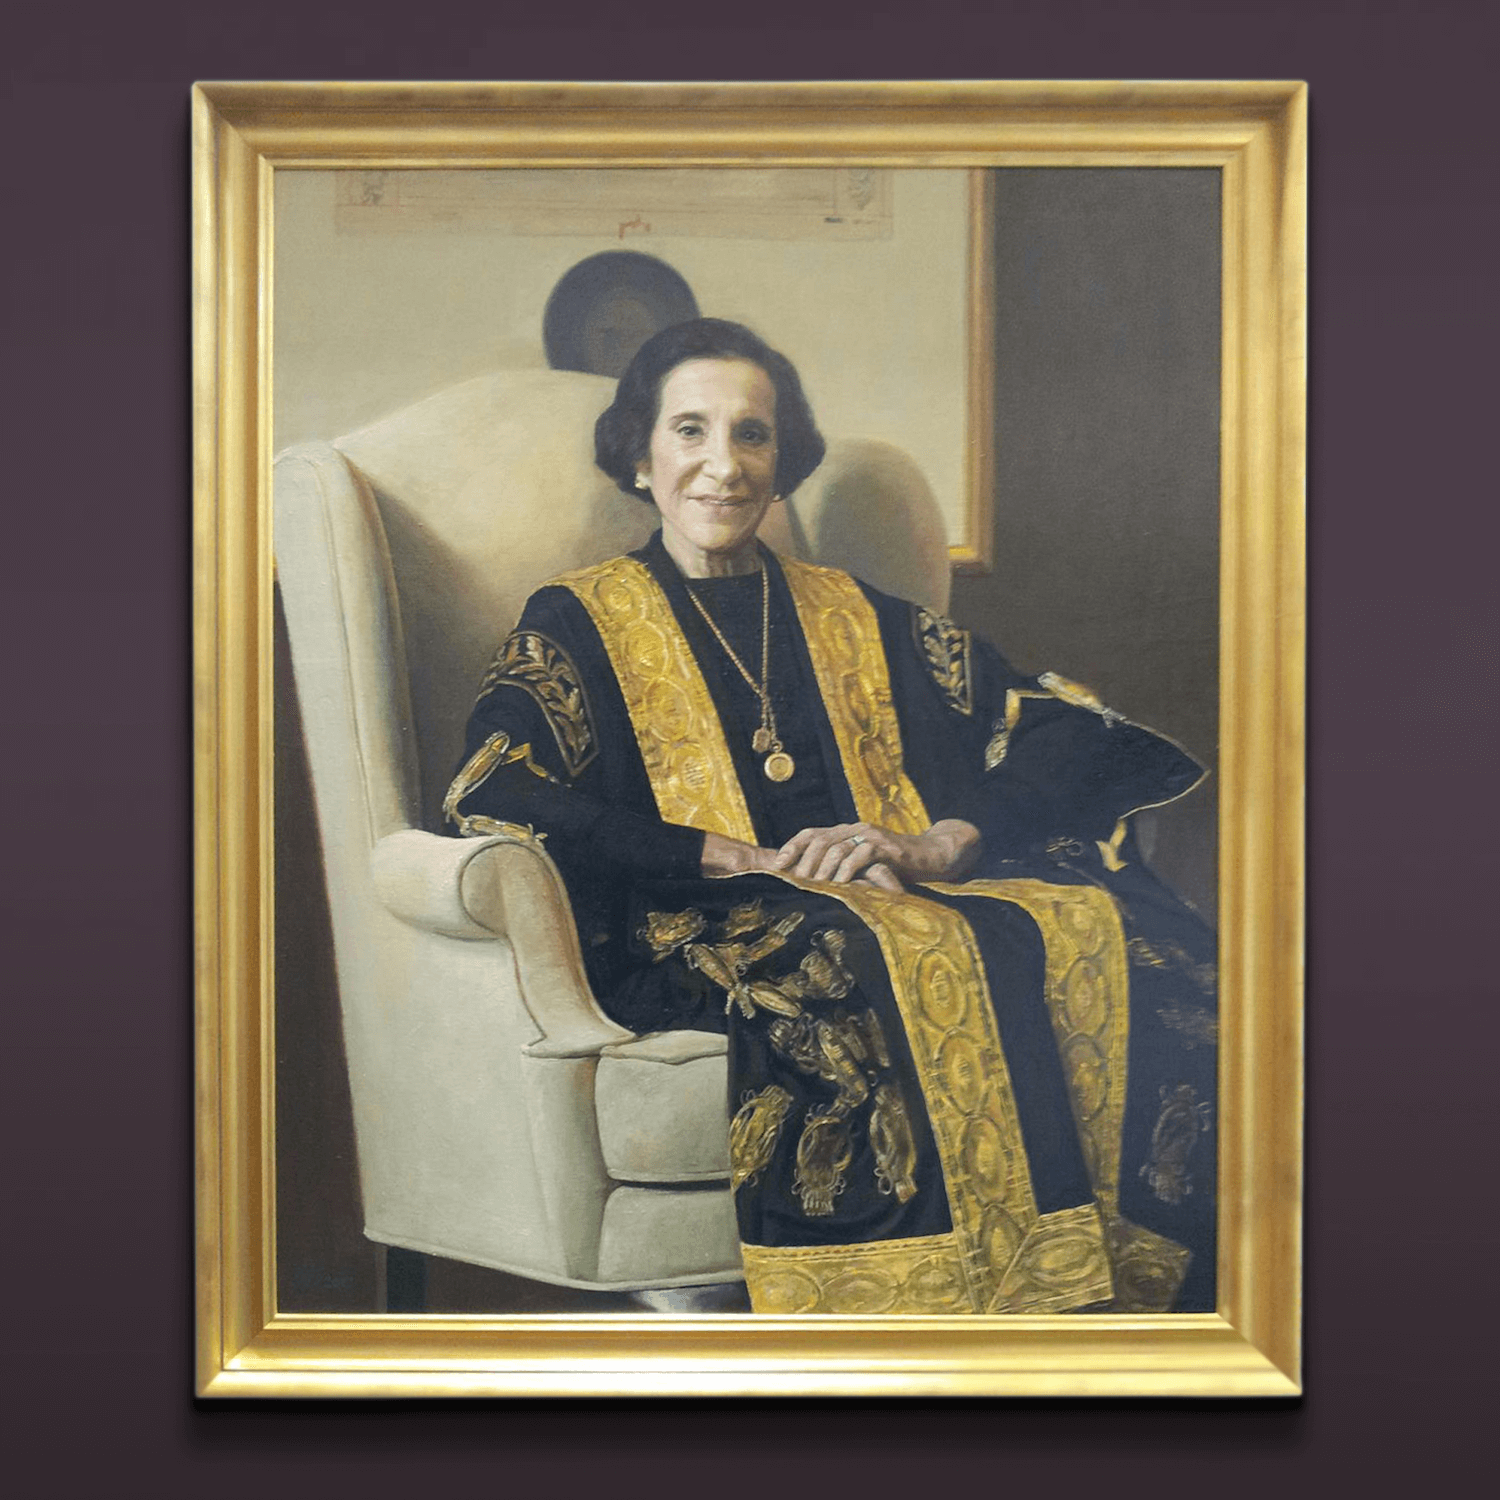 Framing Court Miranda Portrait framed in gold